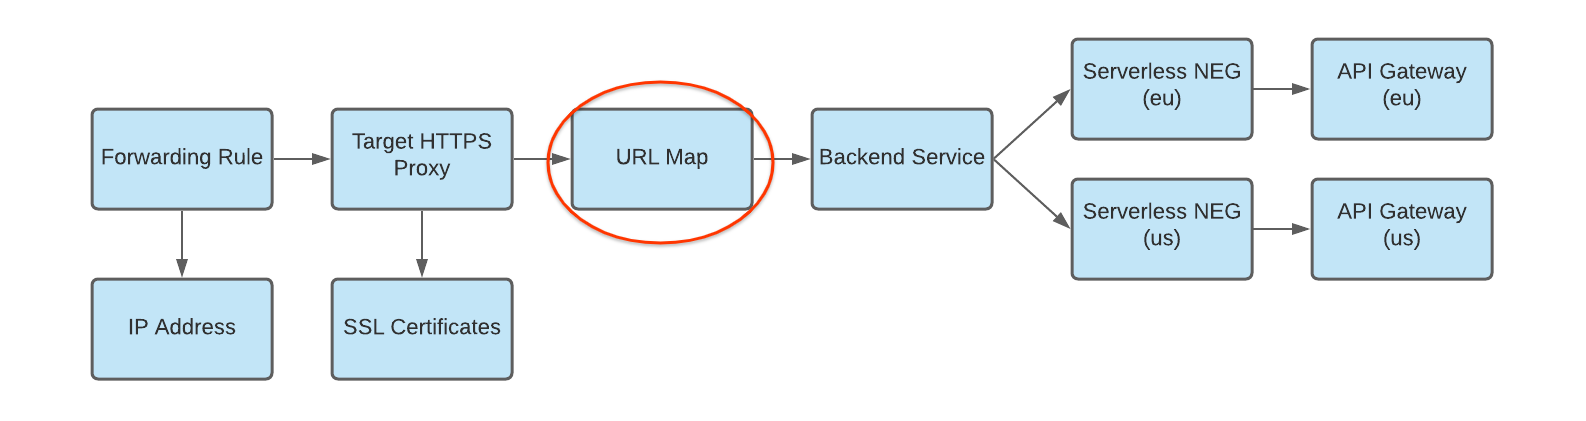 複数のデプロイがあるバックエンド サービスへの URL マップを示す図